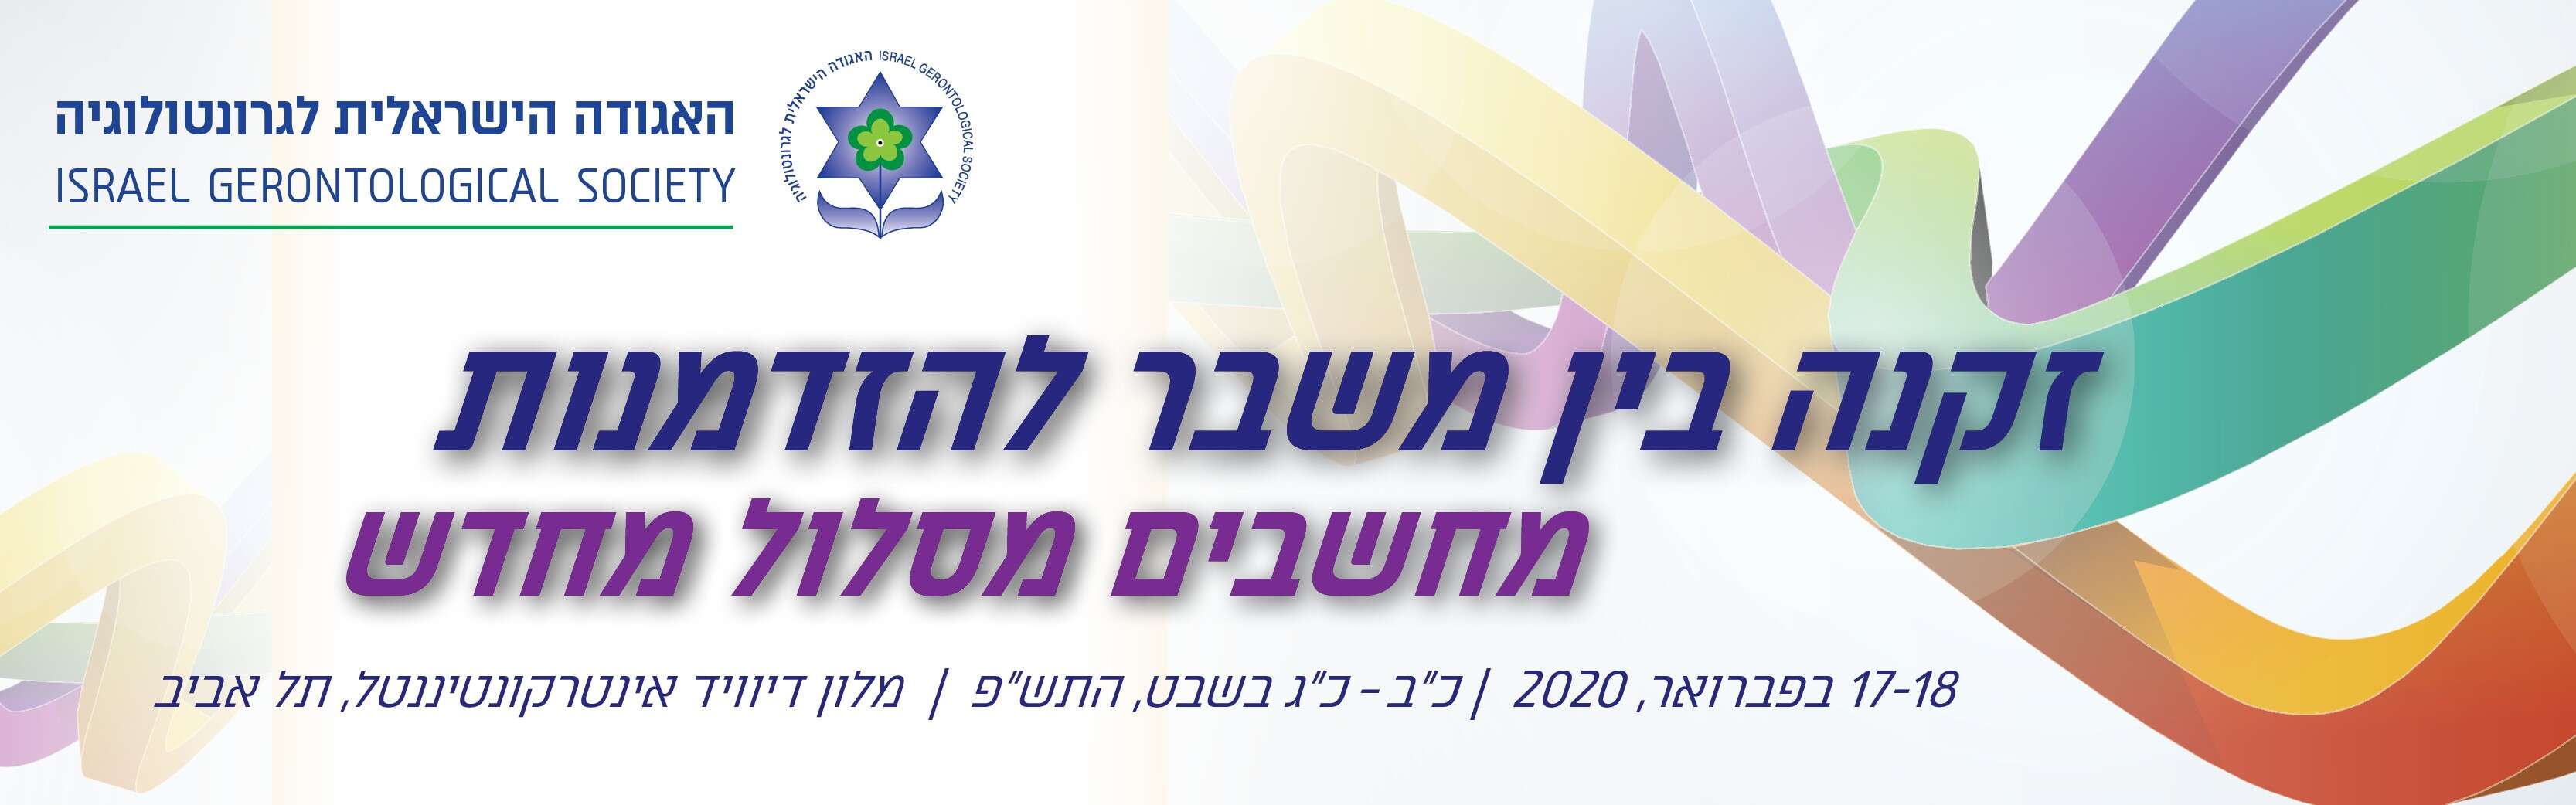 הכינוס הדו שנתי ה-23 של האגודה הישראלית לגרונטולוגיה, 17-18 בפברואר,2020